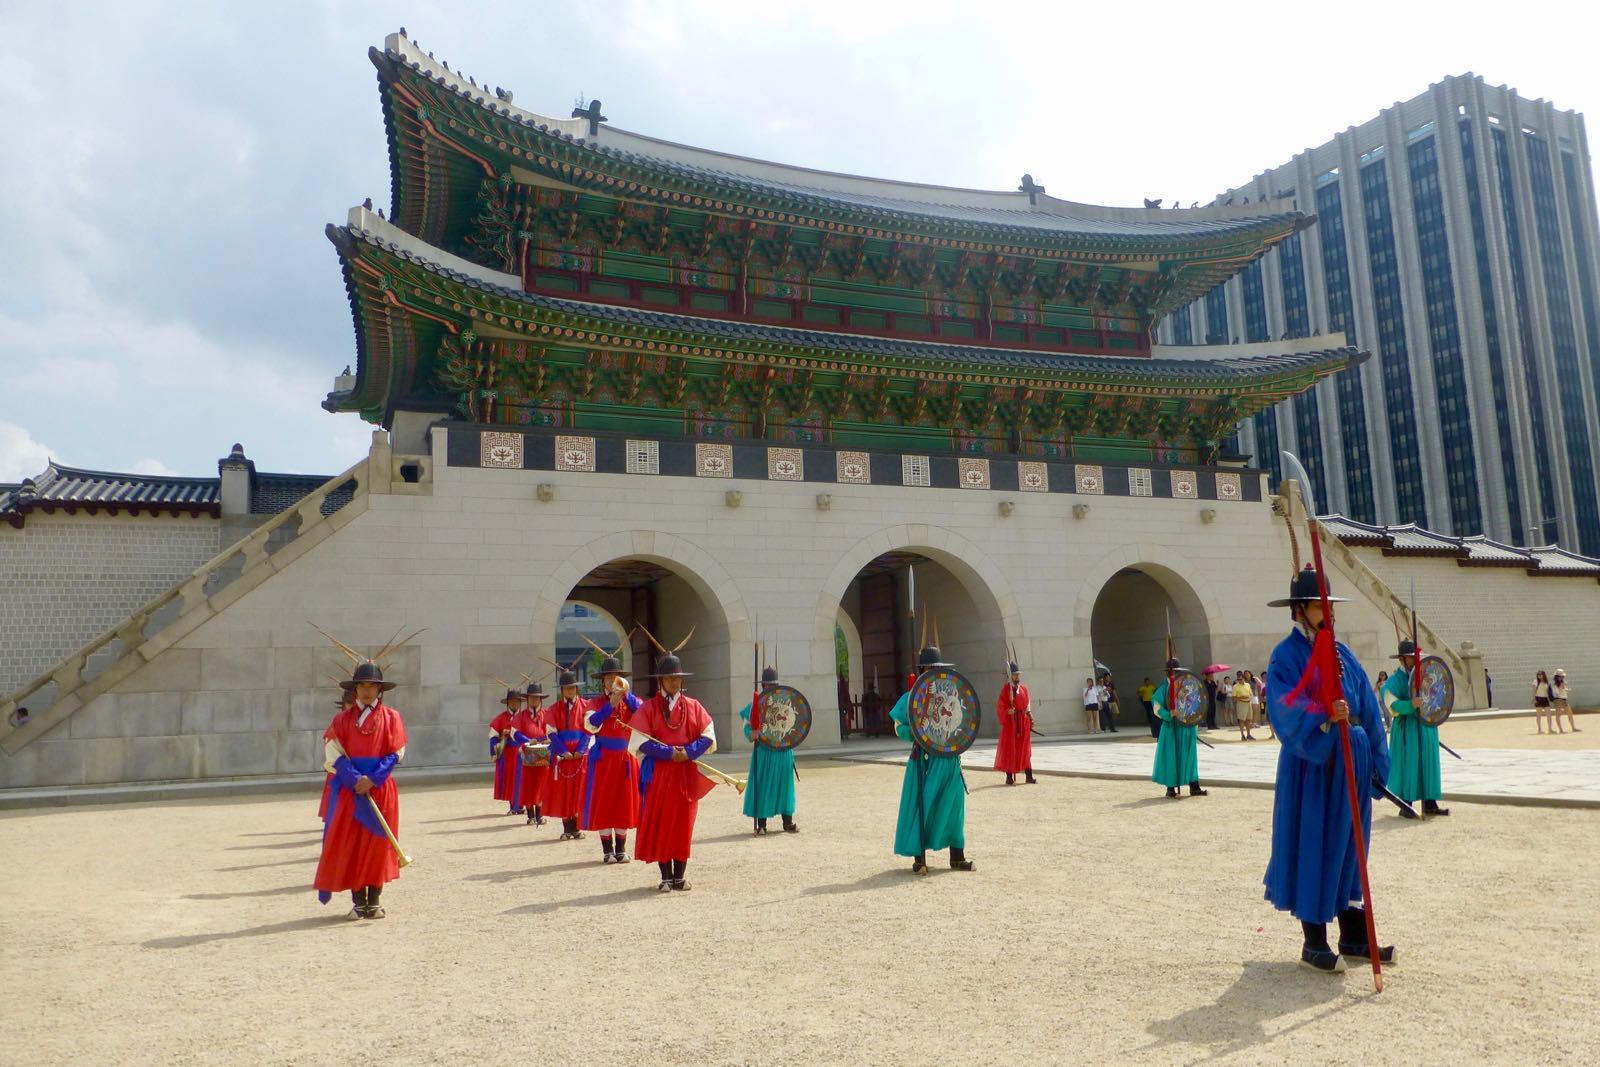 Pergantian Penjaga Di Gyeongbokgung